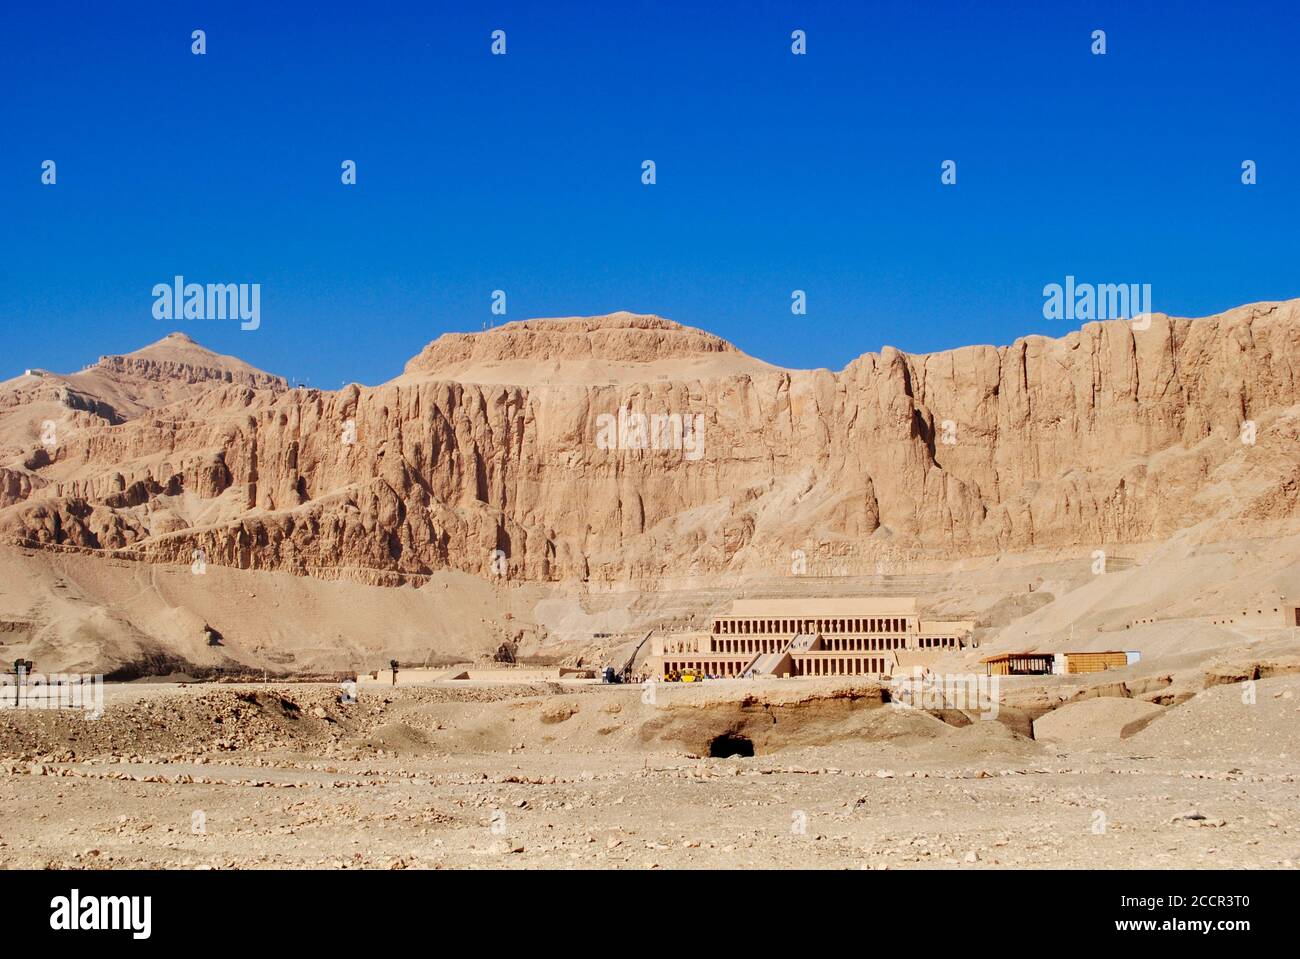 El impresionante templo mortuorio de la reina Hatshepsut. Orilla oeste del Nilo cerca del Valle de los Reyes. Egipto. Foto de stock